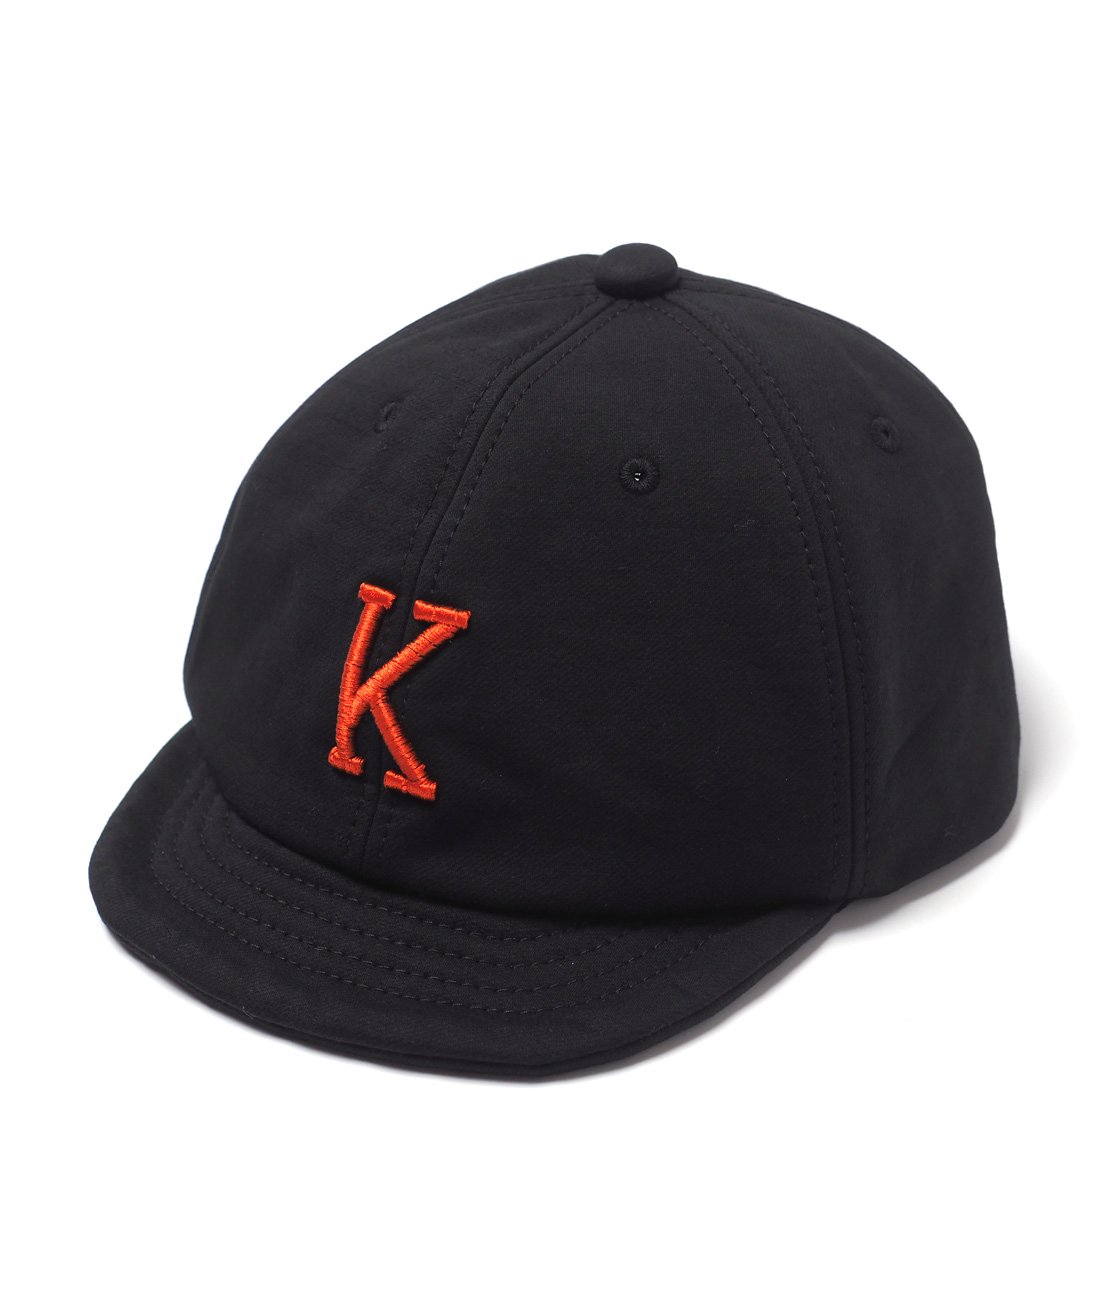 JACKMAN】JM6363 CU BB CAP - BLACK ベースボールキャップ 帽子 サイズ